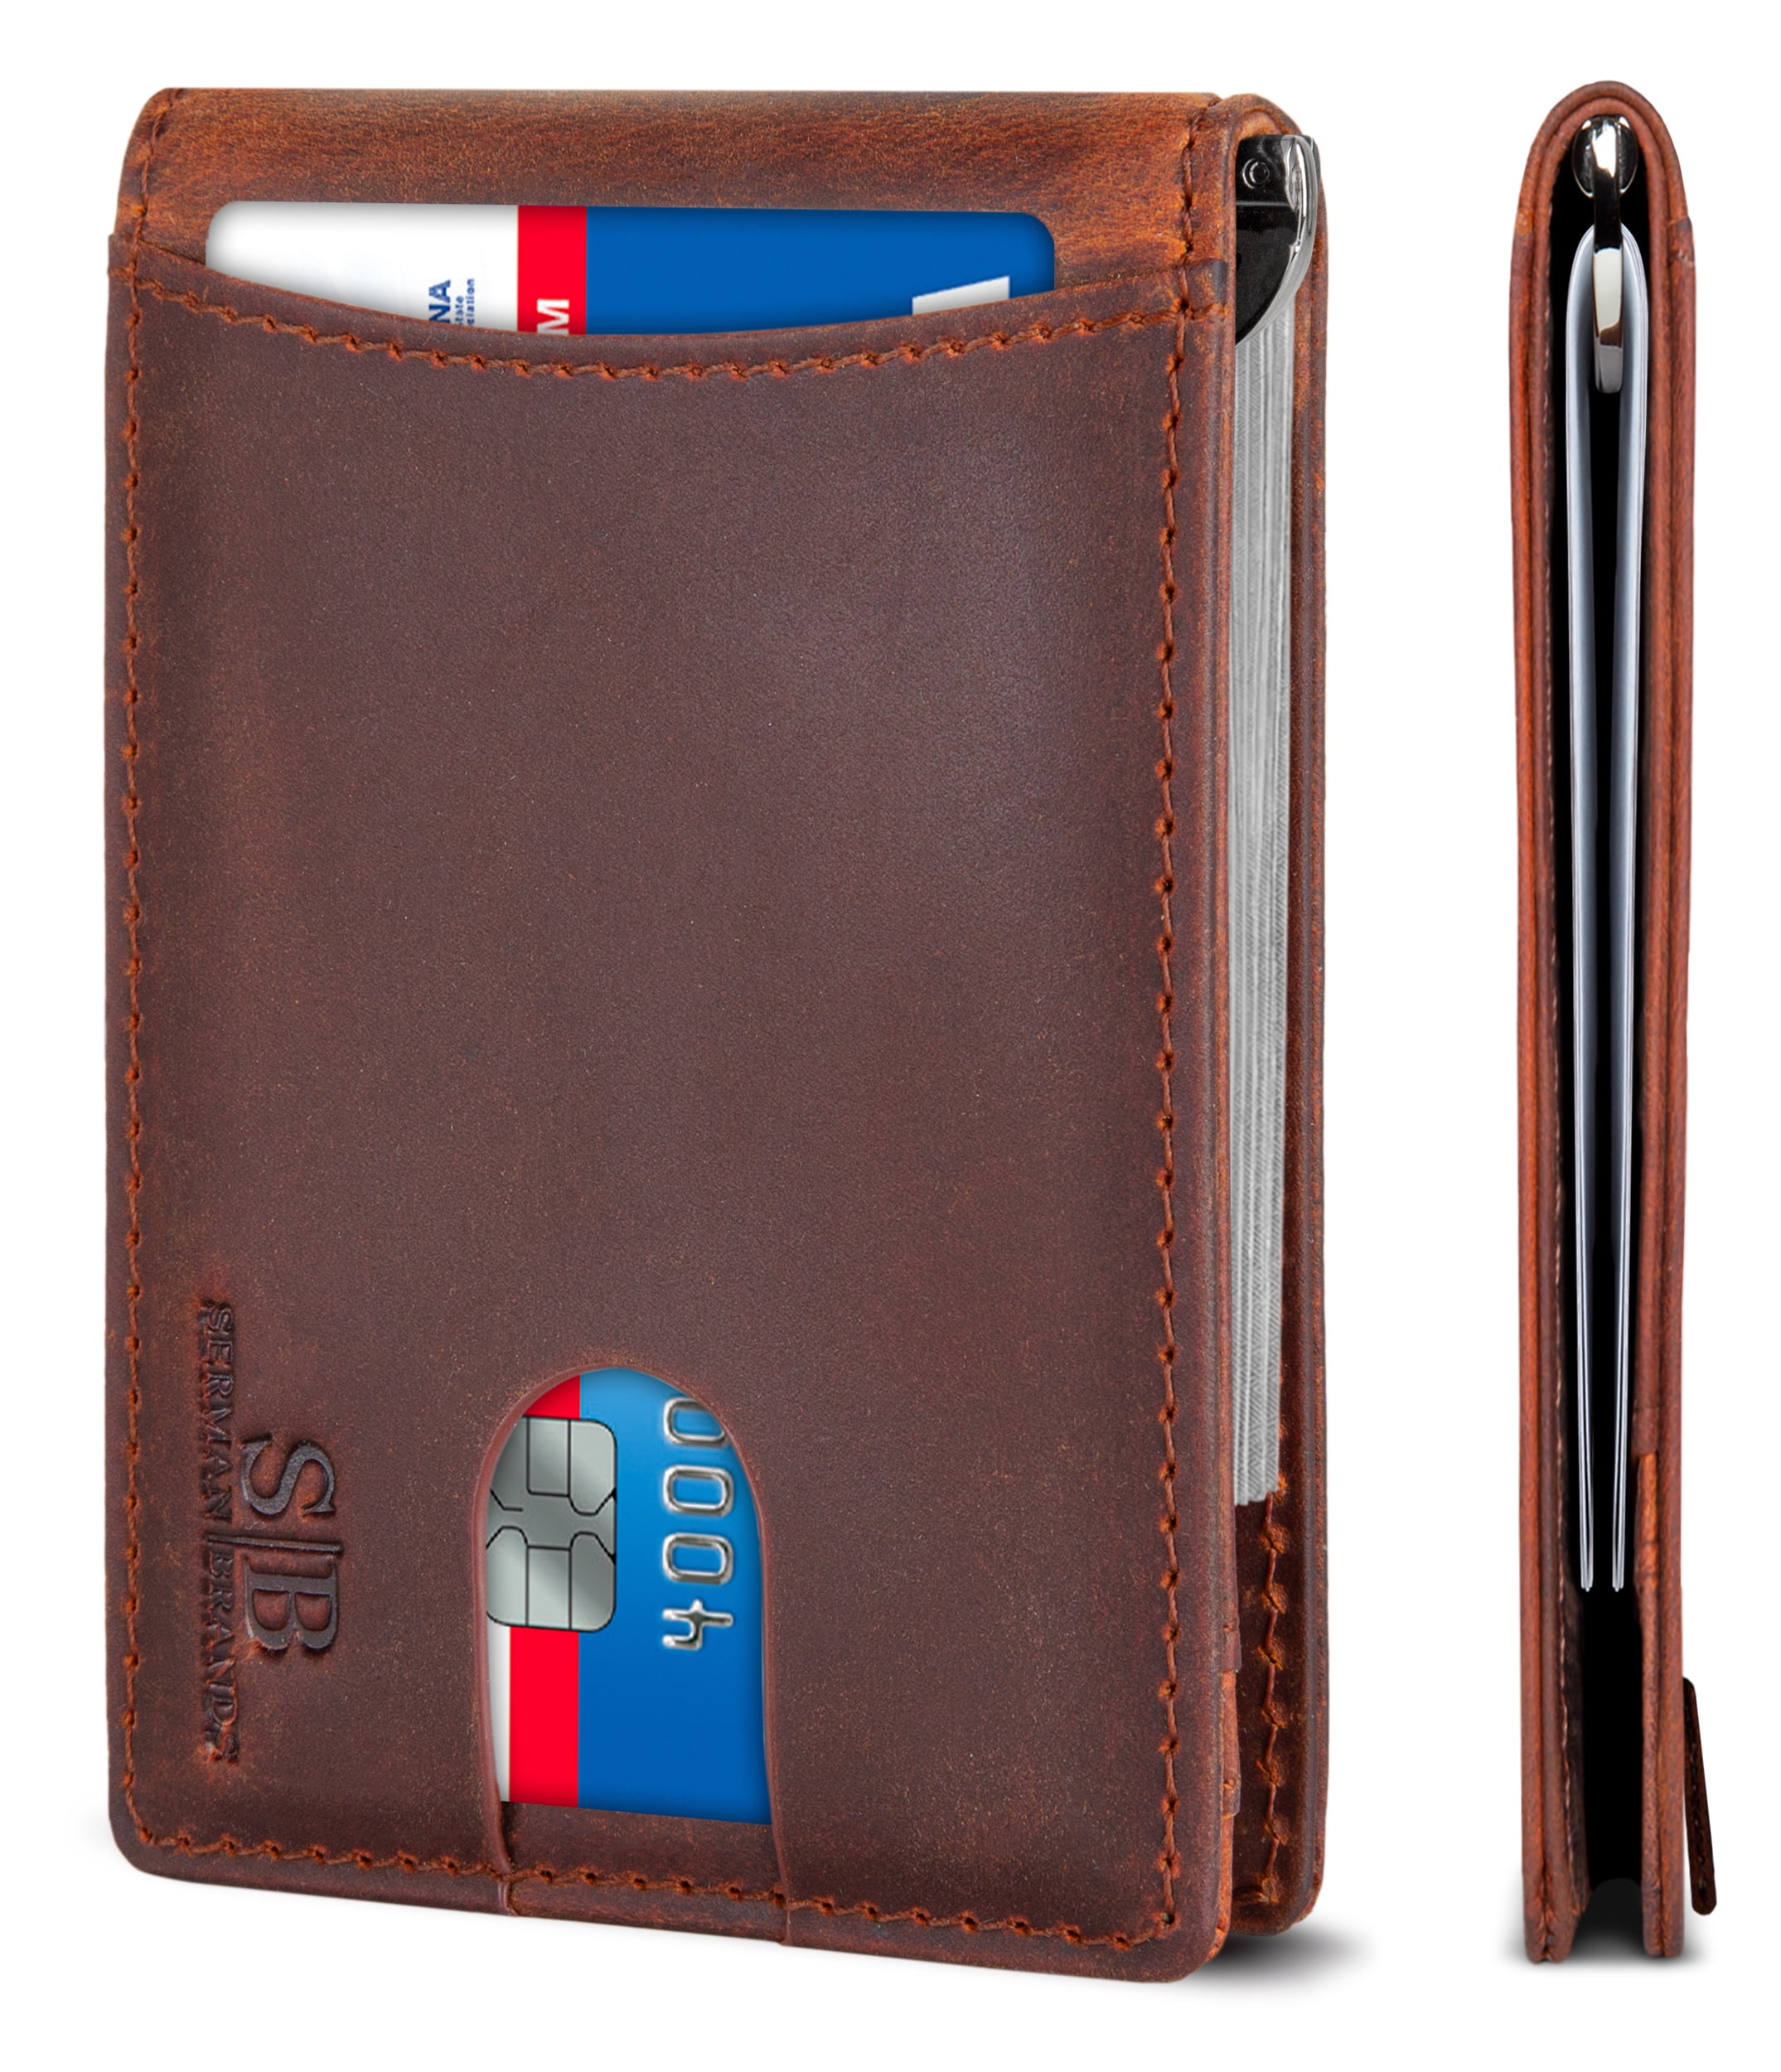 Storus Smart Wallet Premium Card Holder Money Clip Slim Minimalist